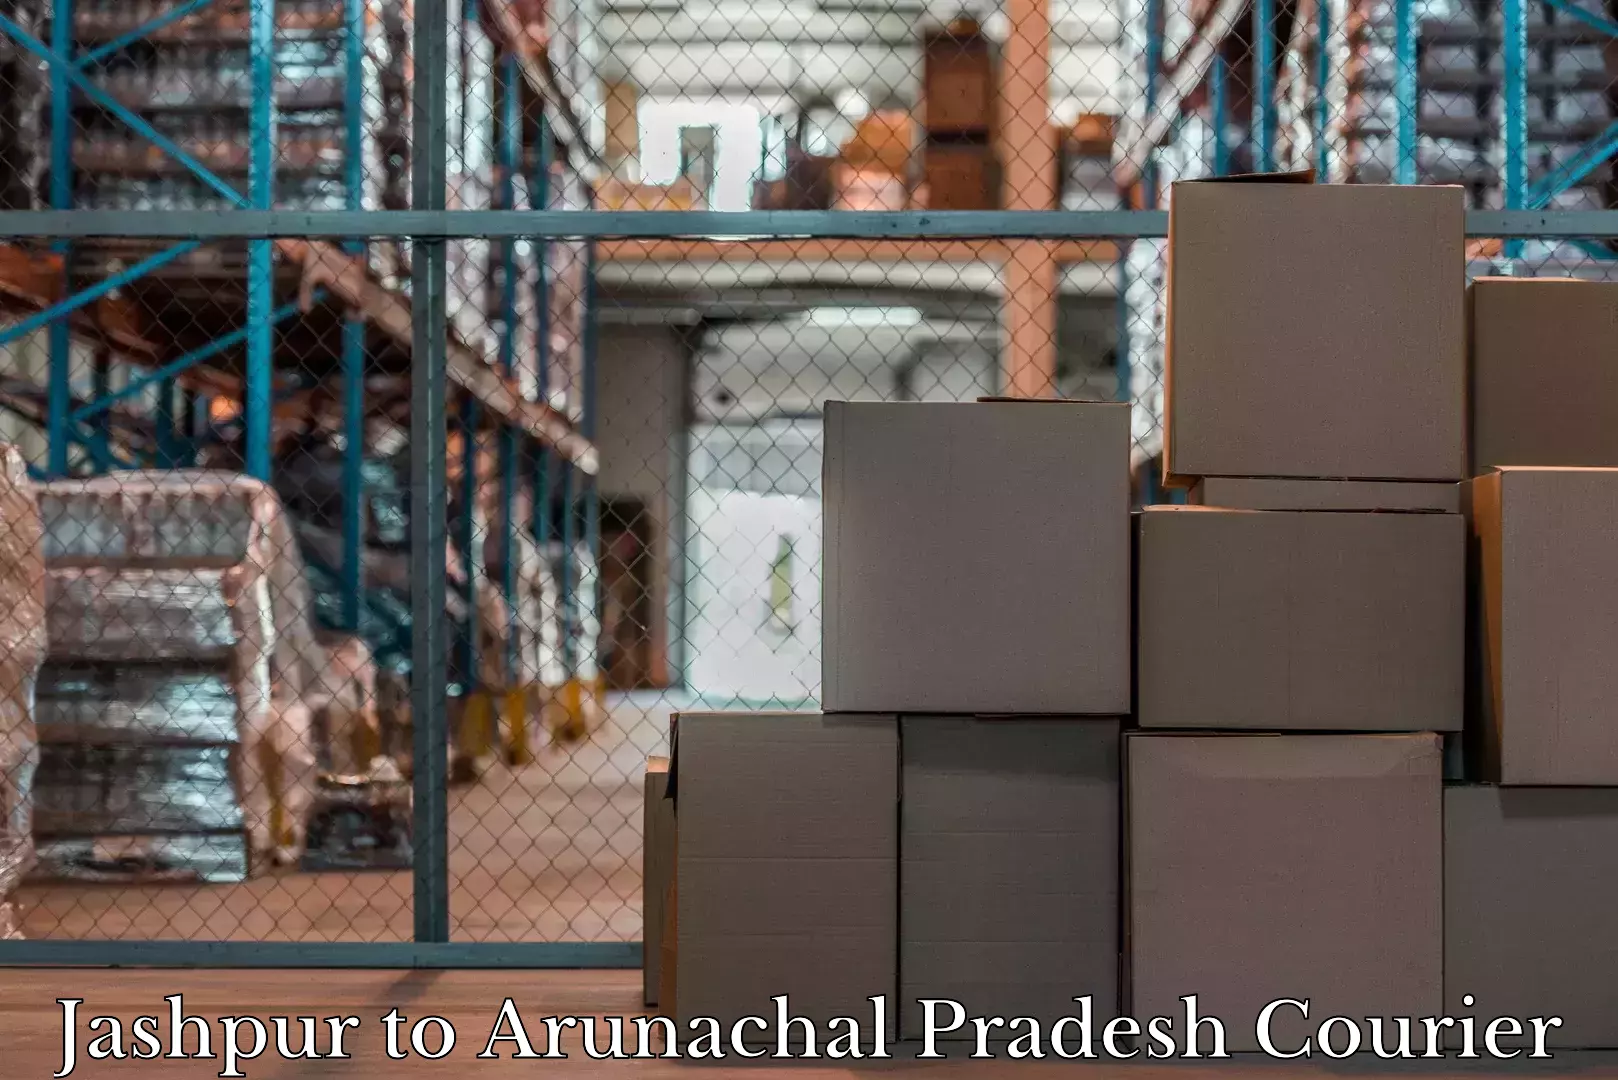 Baggage delivery support Jashpur to Arunachal Pradesh